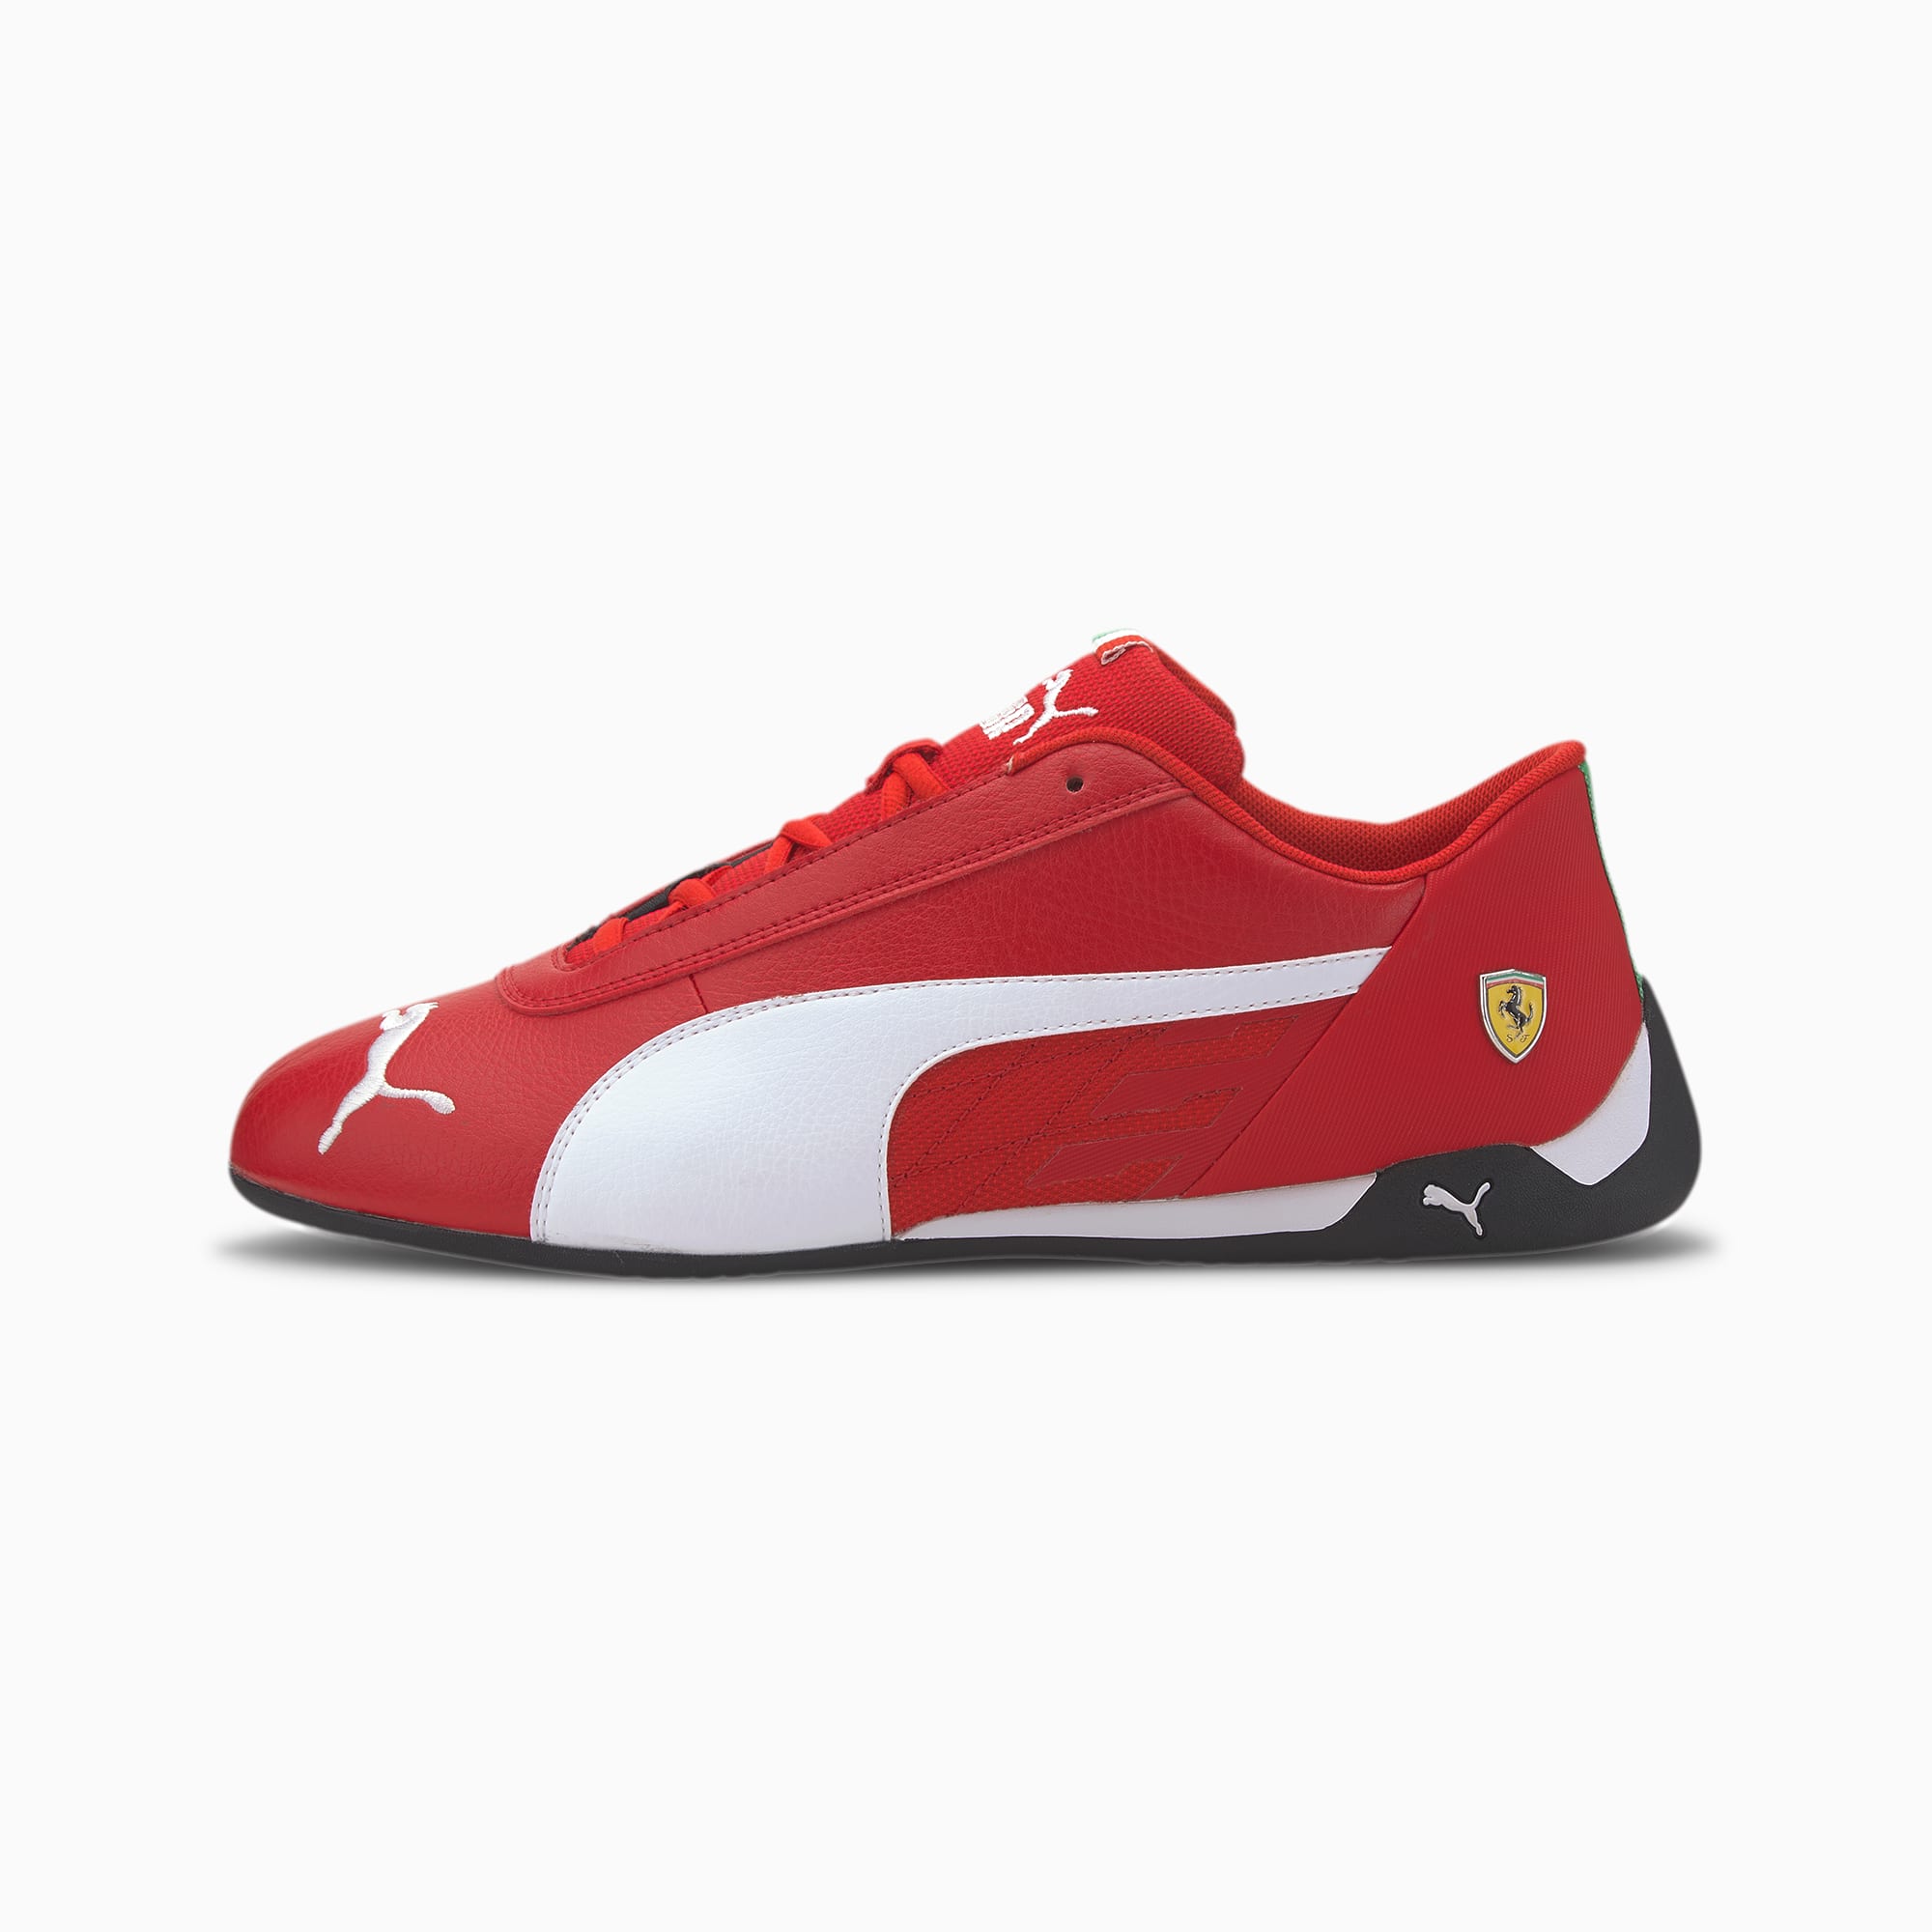 Scarpe da ginnastica Scuderia Ferrari R-Cat | Rosso Corsa-White-Black |  PUMA Scuderia Ferrari | PUMA Italia